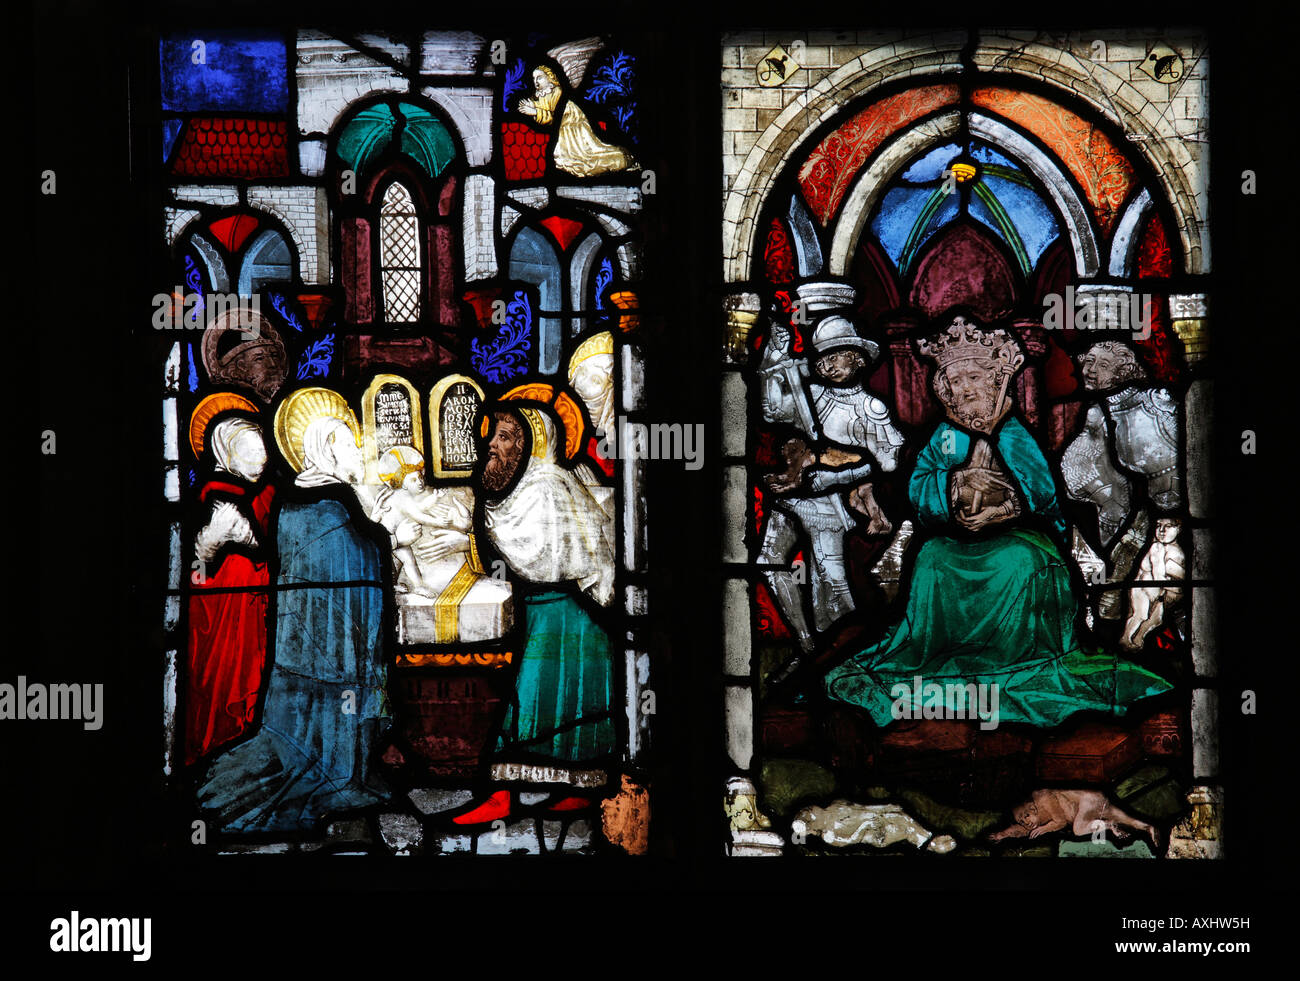 Ulm, Münster, Bessererkapelle, Glasmalerei im Chörlein, Darstellung im Tempel und Kindermord Stock Photo